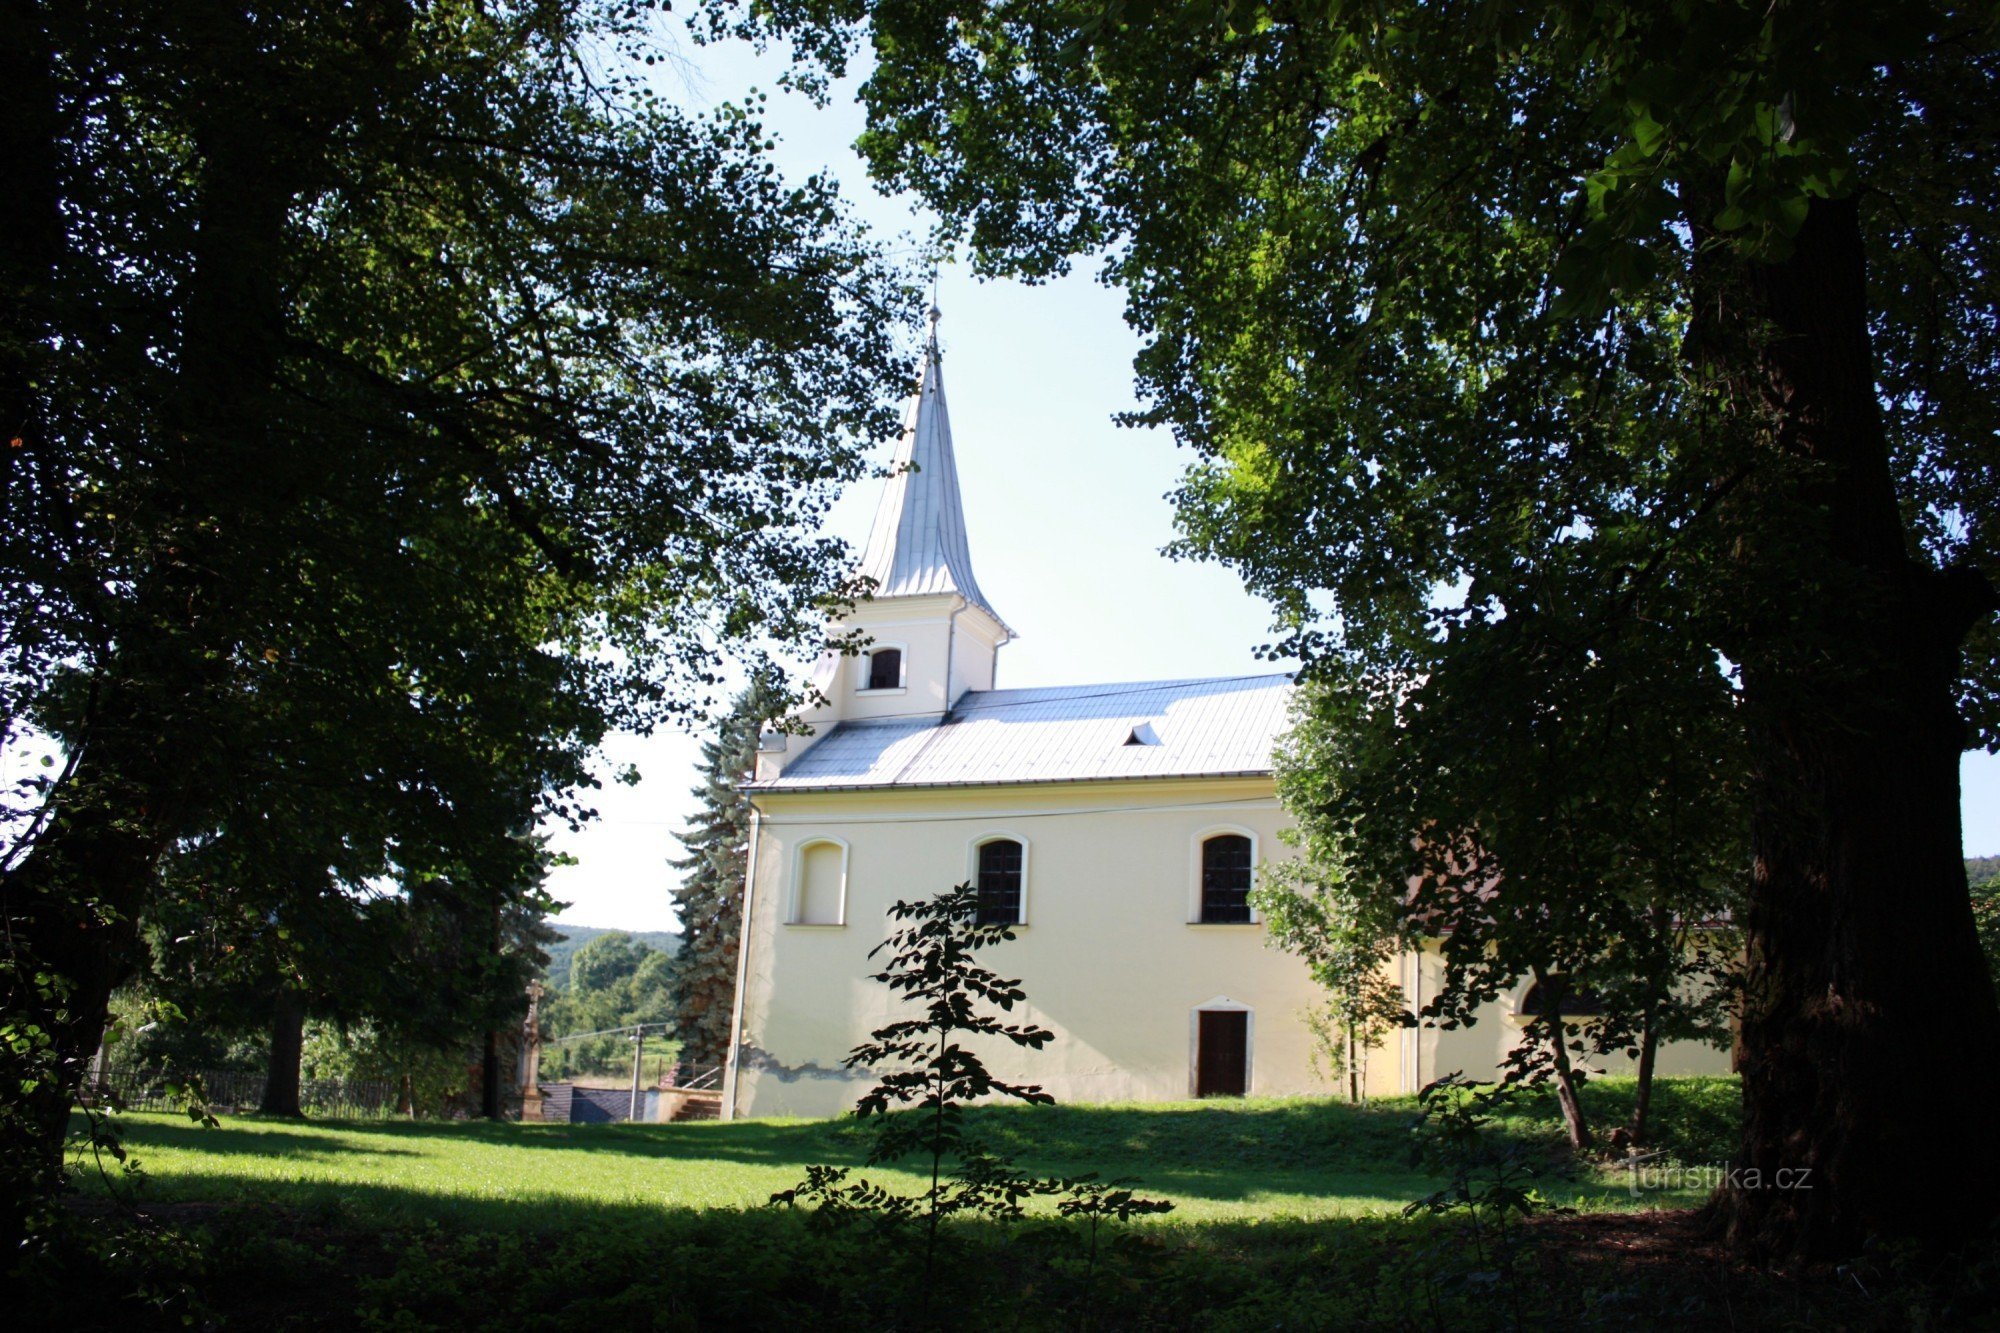 Cerca del castillo se encuentra la iglesia de St. Lirio